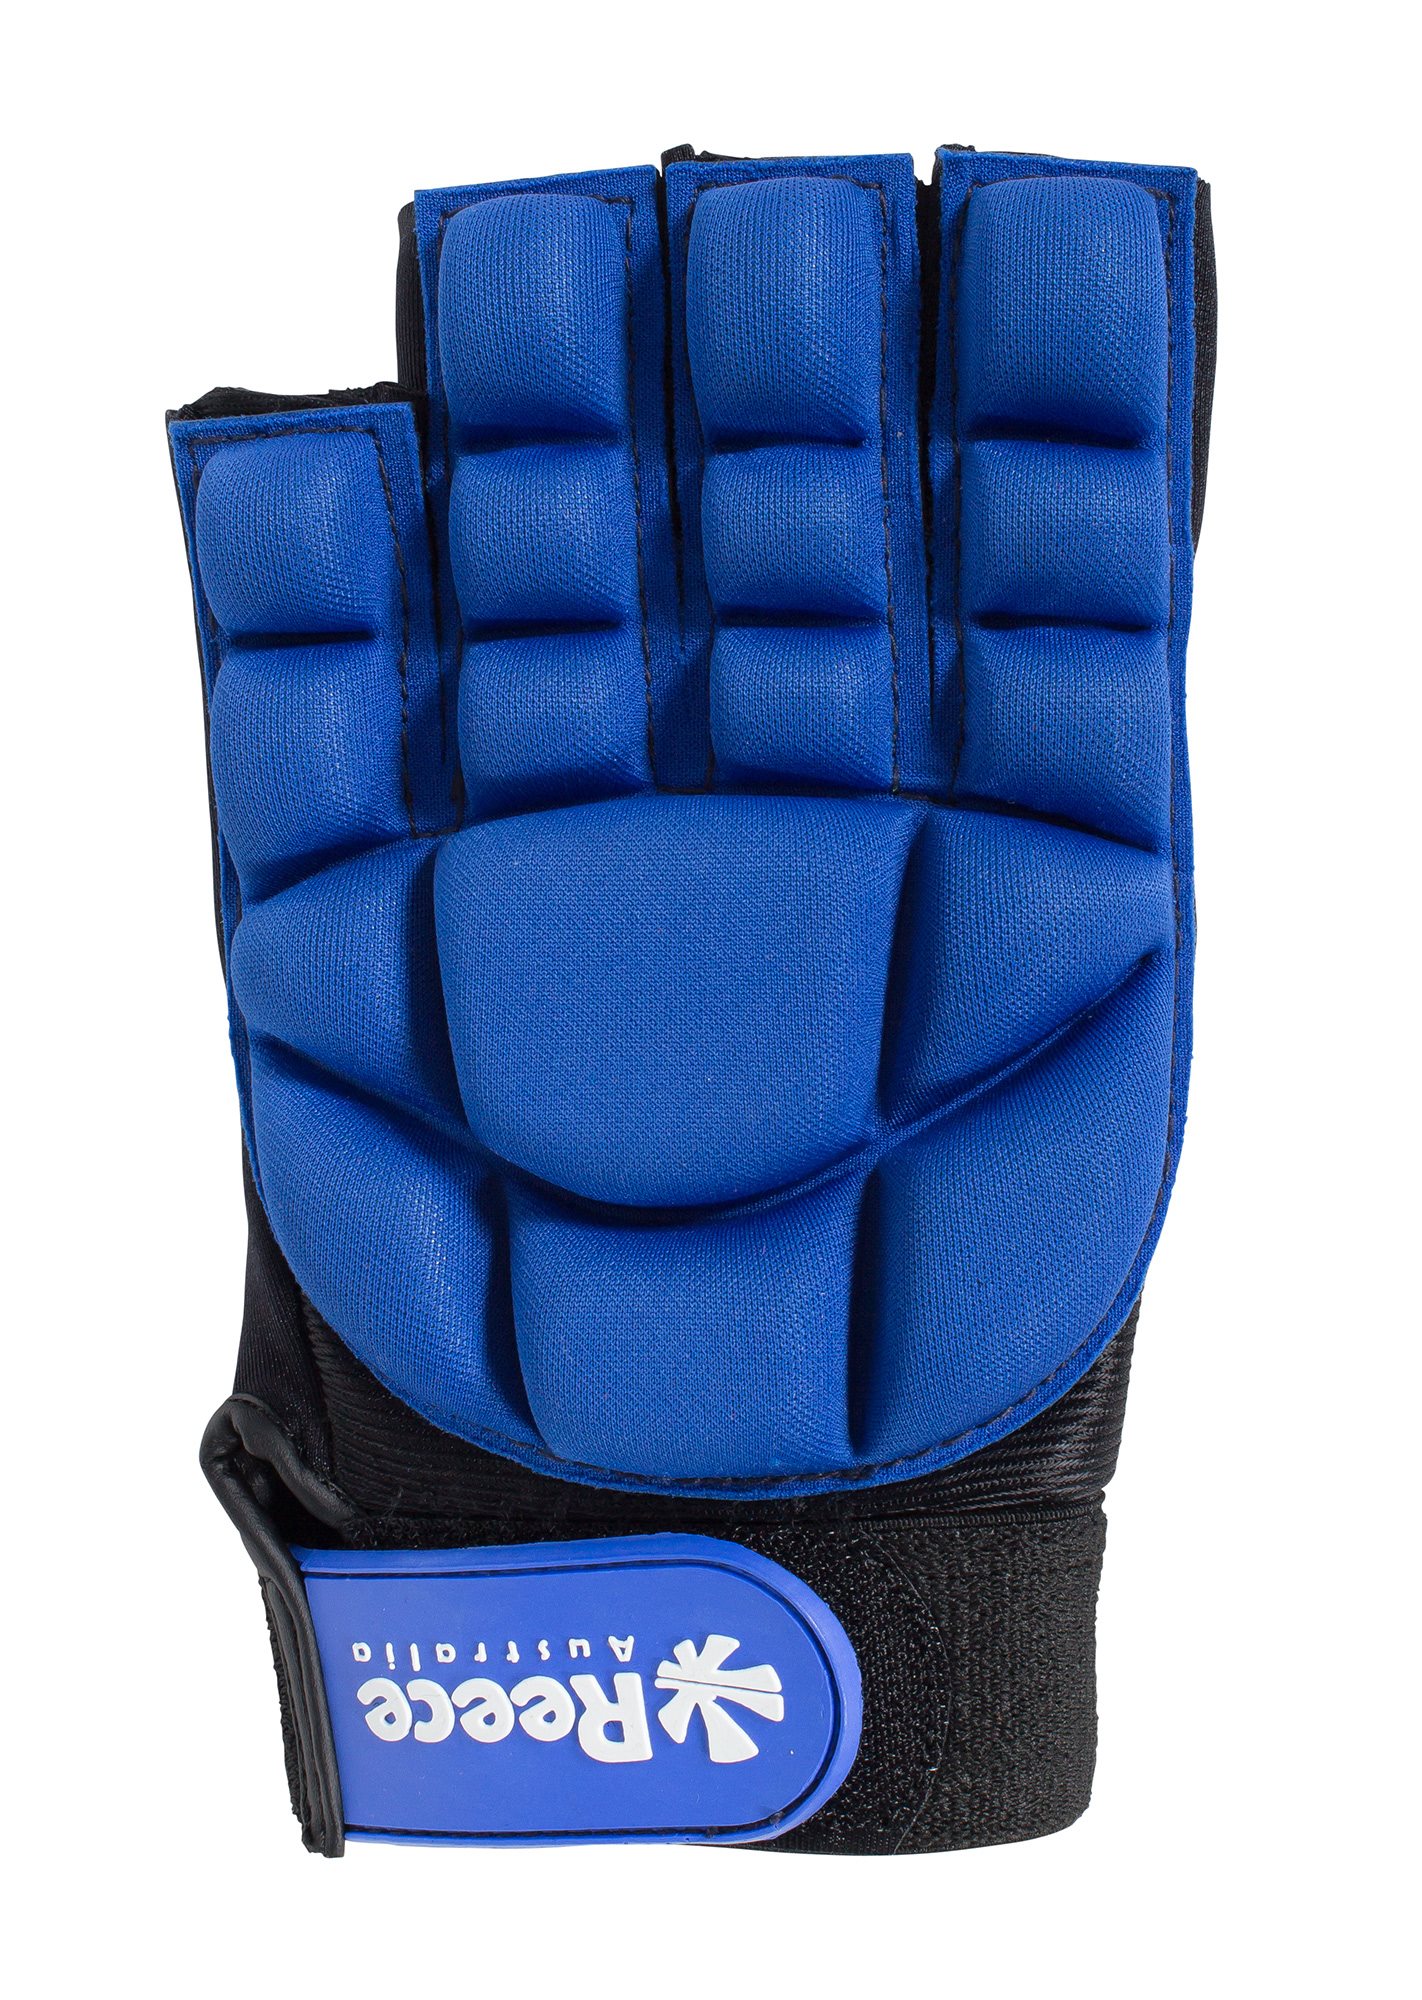 Comfort Half Finger Glove